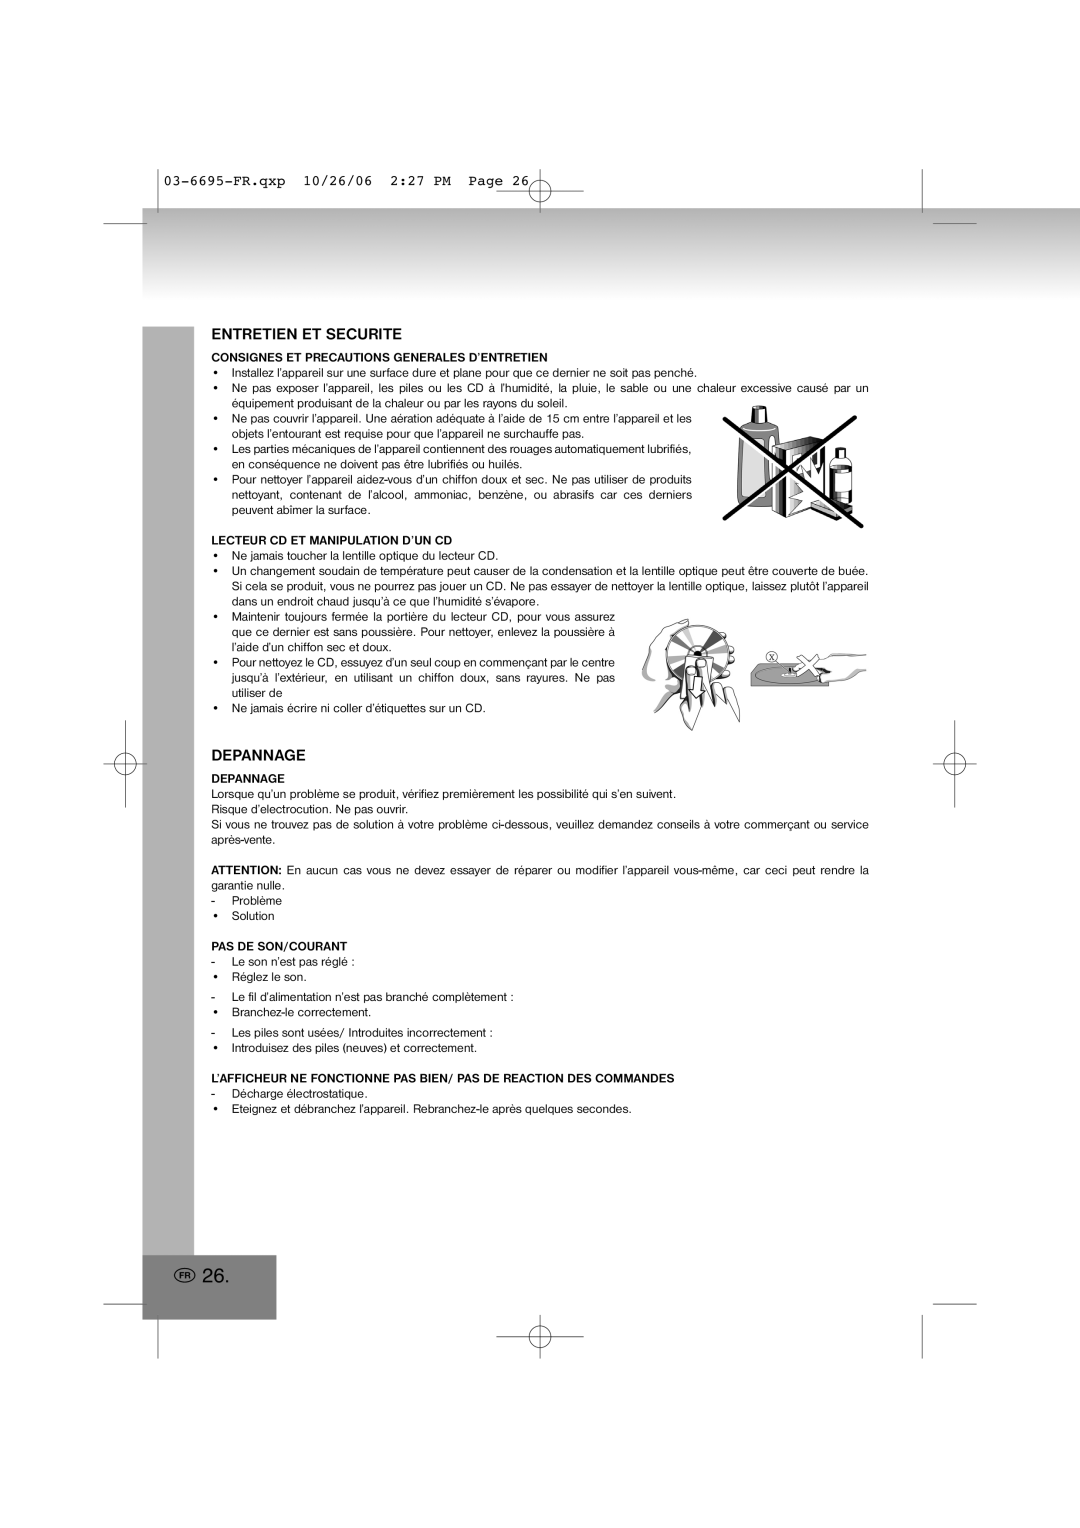 Elta manual Entretien Et Securite, Depannage, 03-6695-FR.qxp10/26/06 2 27 PM Page 